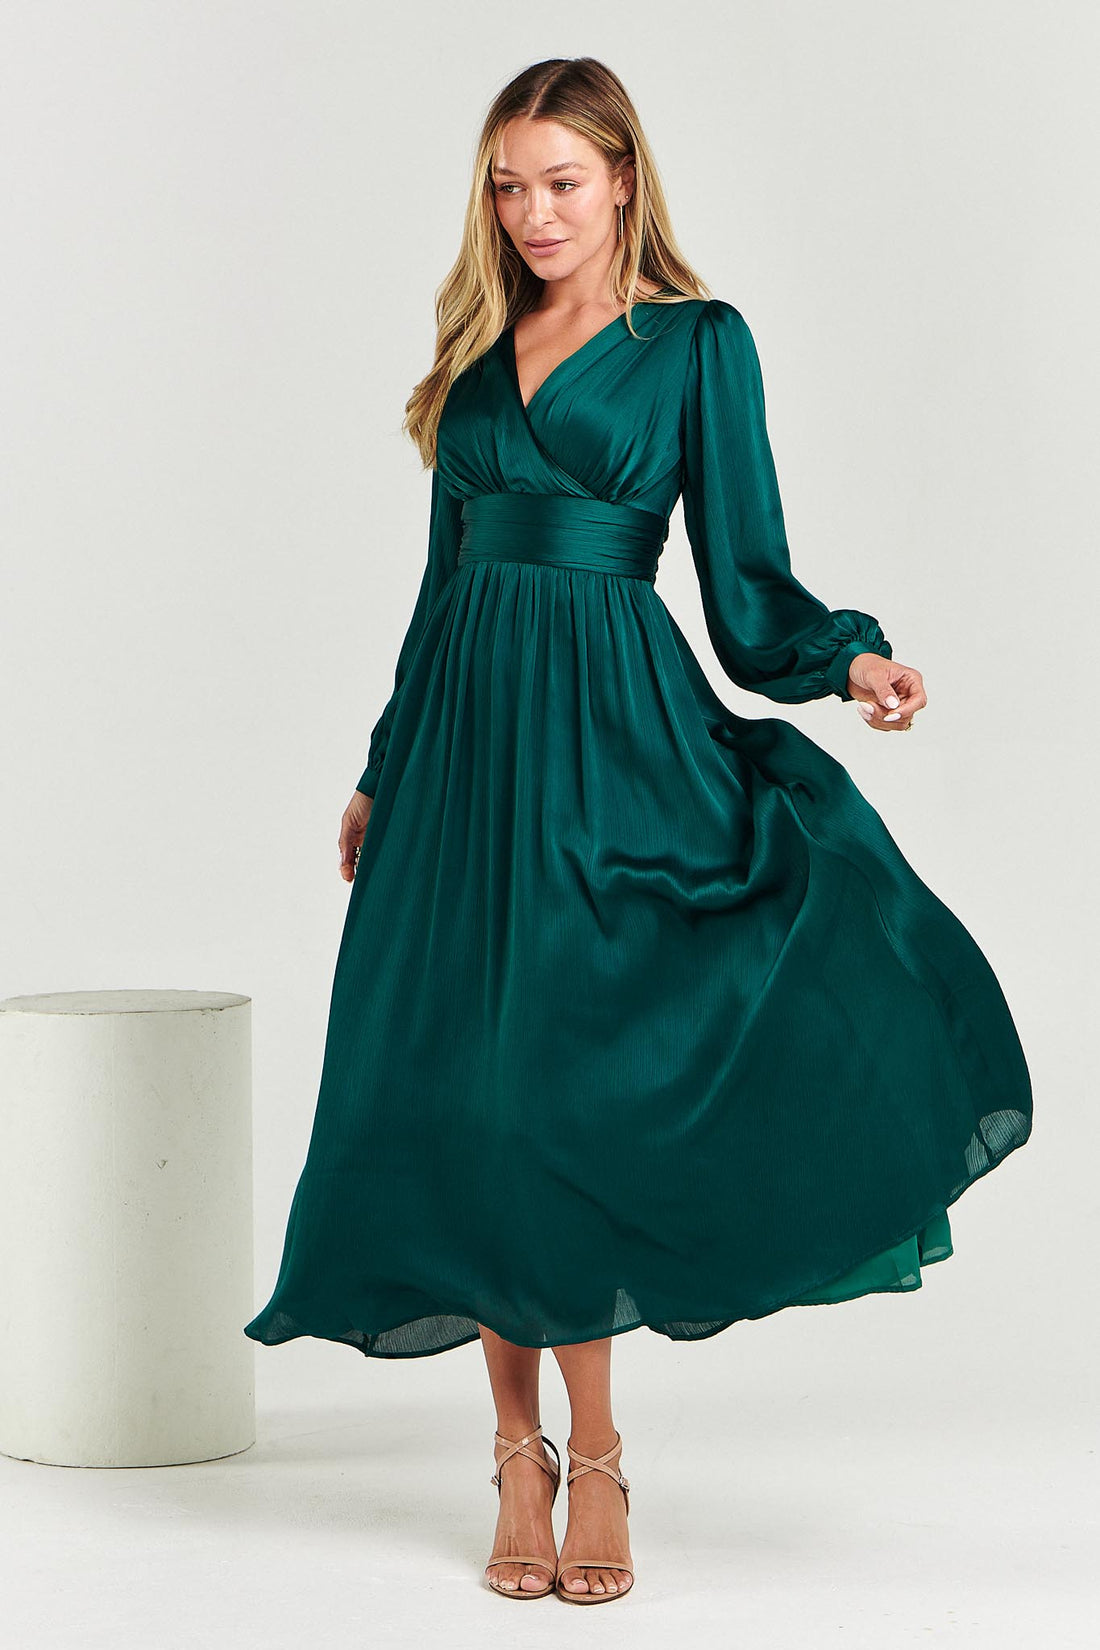 Sabelle Dress - Emerald Green